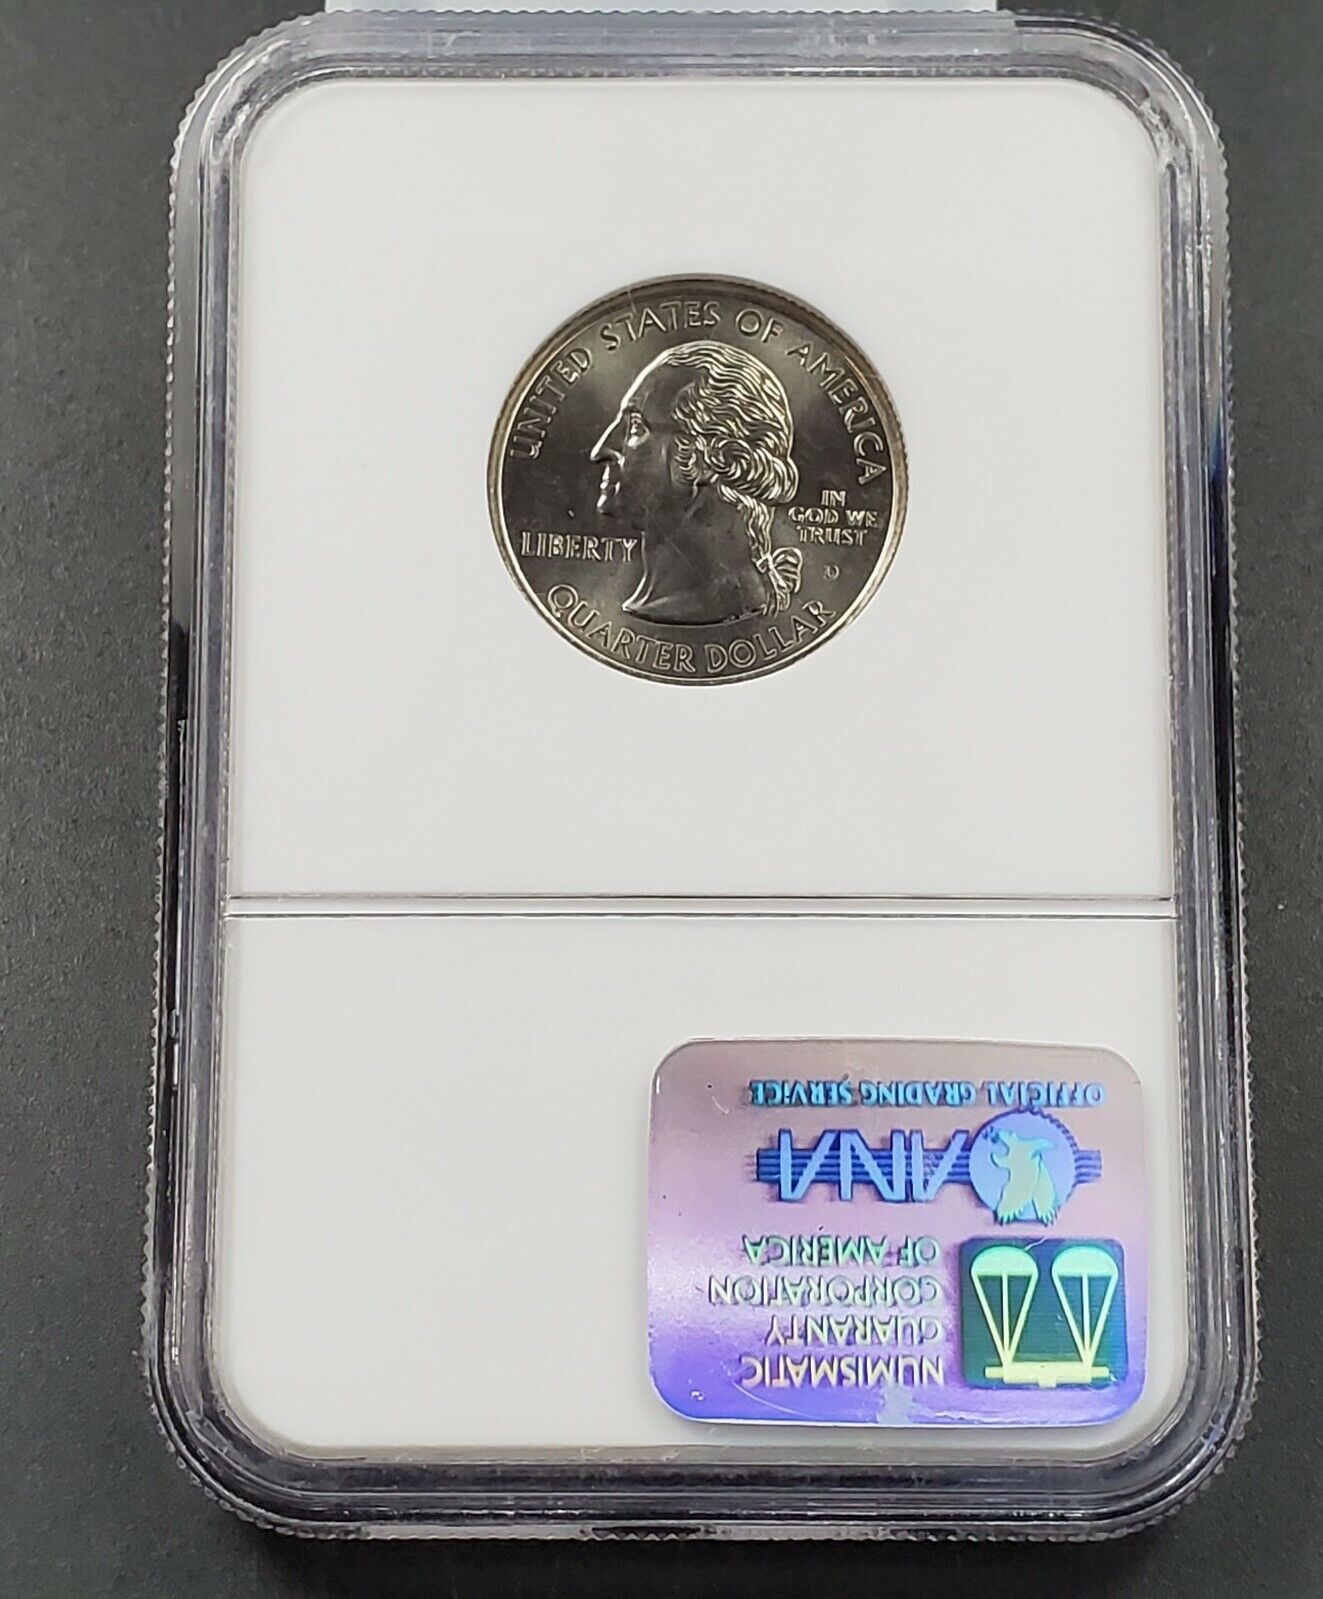 1999 D DELAWARE State Statehood Quarter Coin MS67 NGC Brown Label Holder